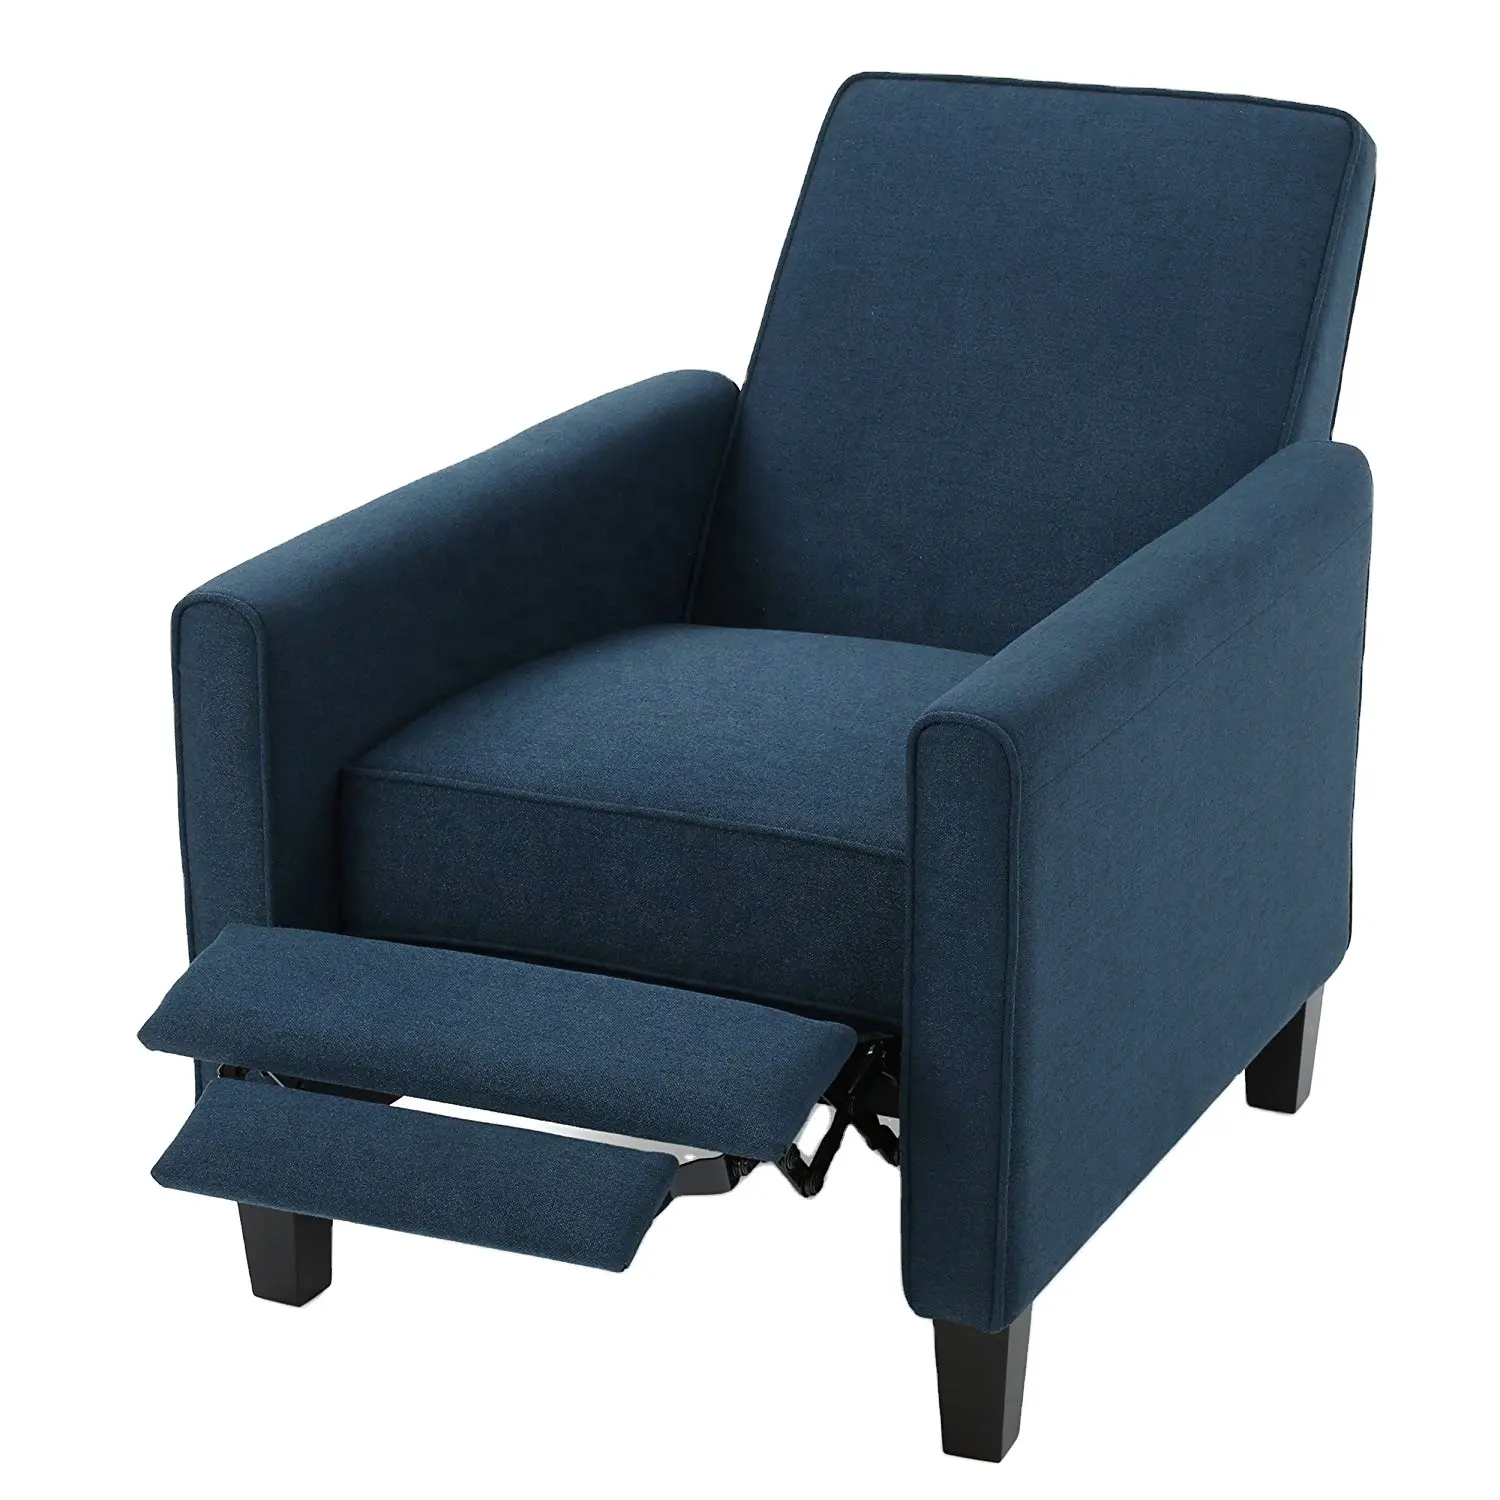 GEEKSOFA Modern Design Leisure Push Cheap Recliner Chair Soft Fabric Seat Cushion for Living Room